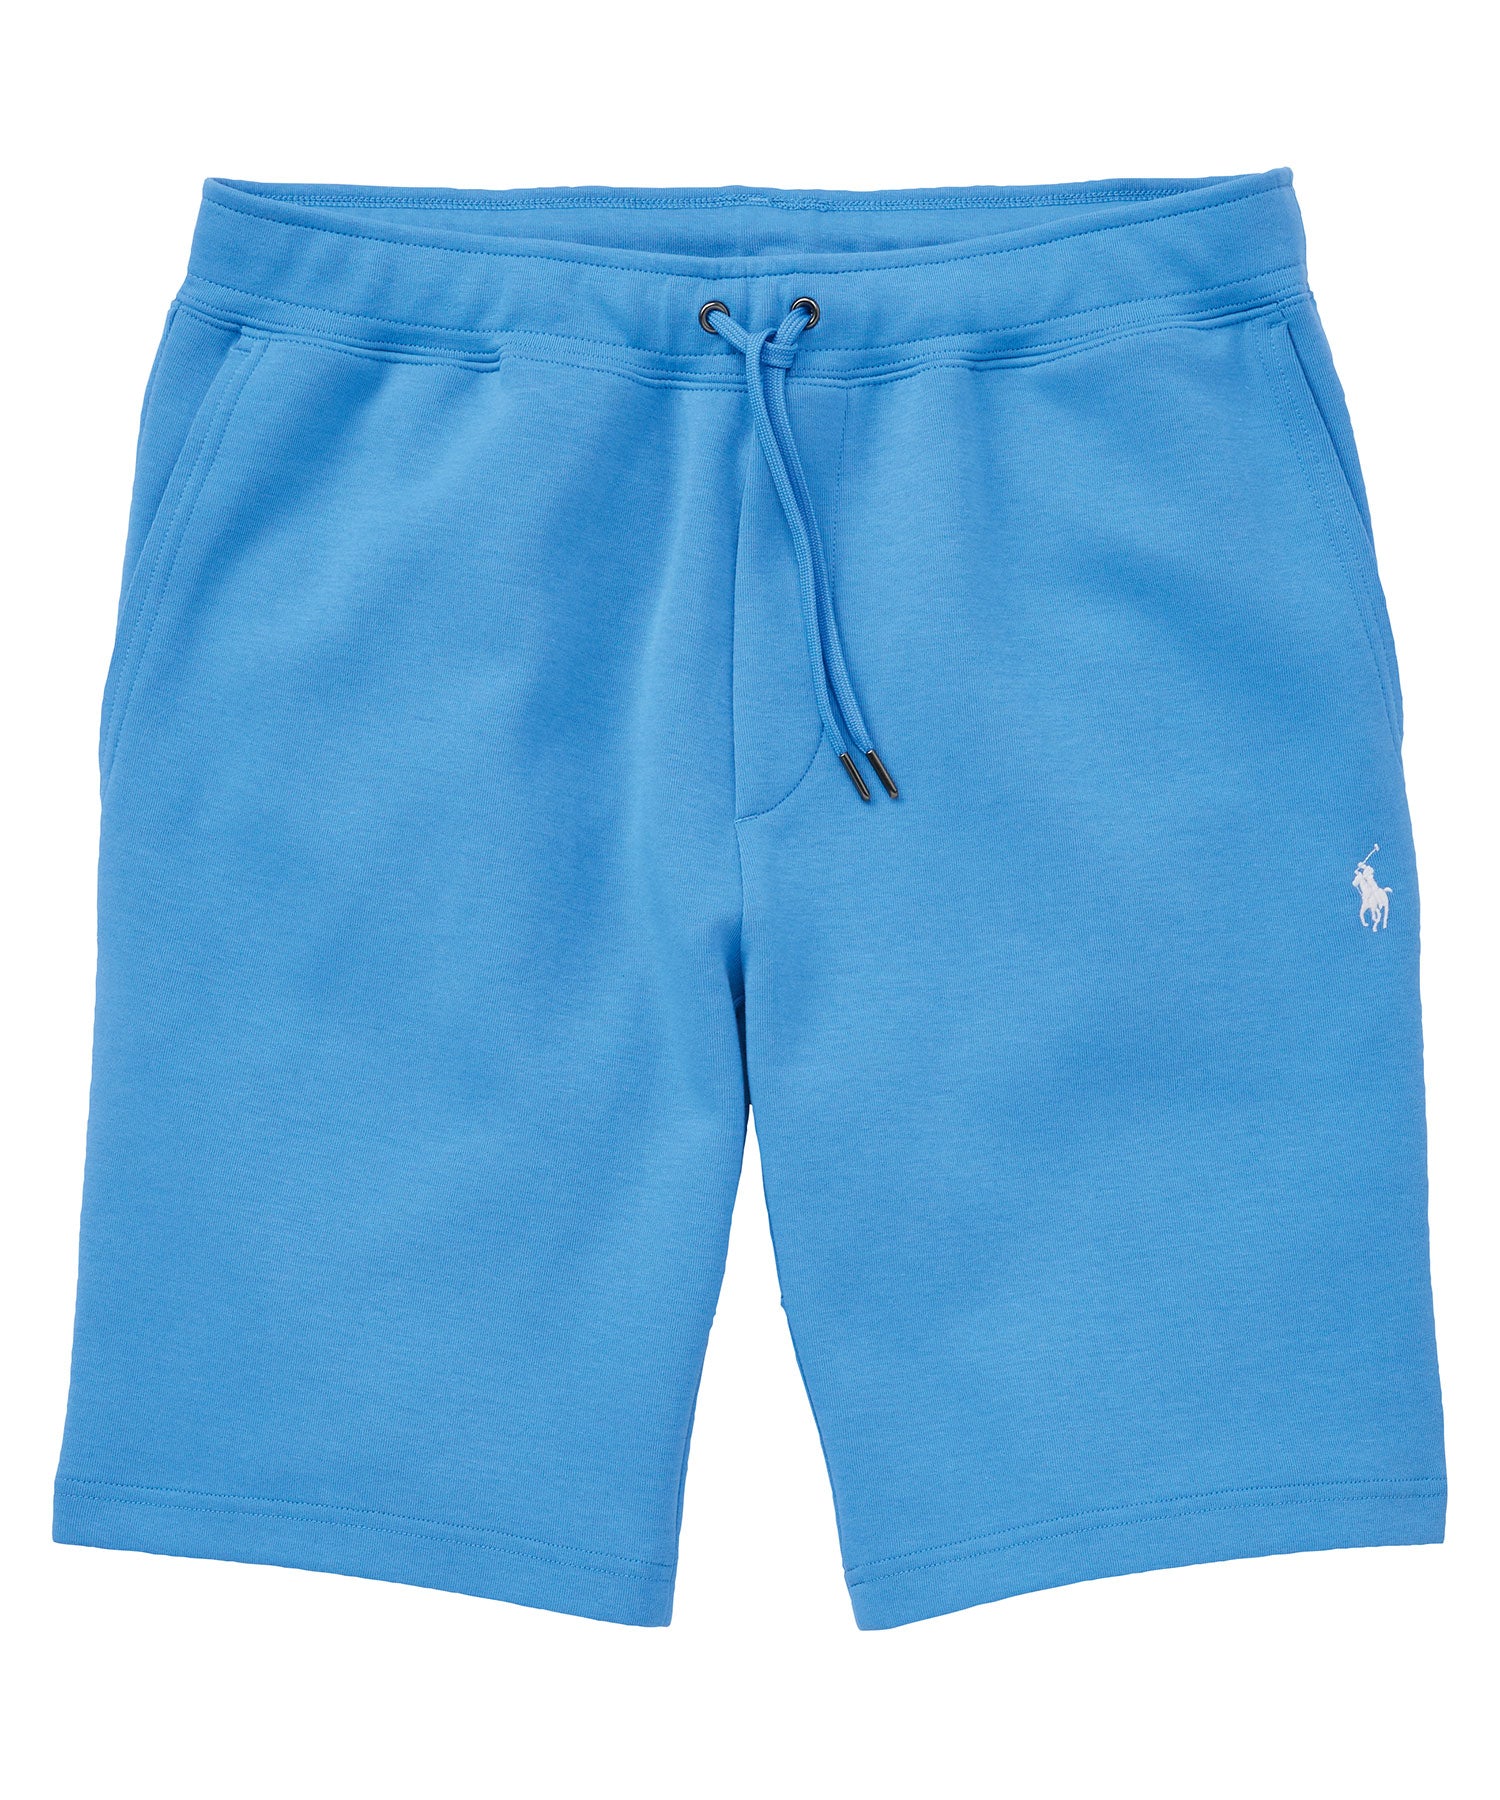 Polo Ralph Lauren Double Knit Short, Men's Big & Tall